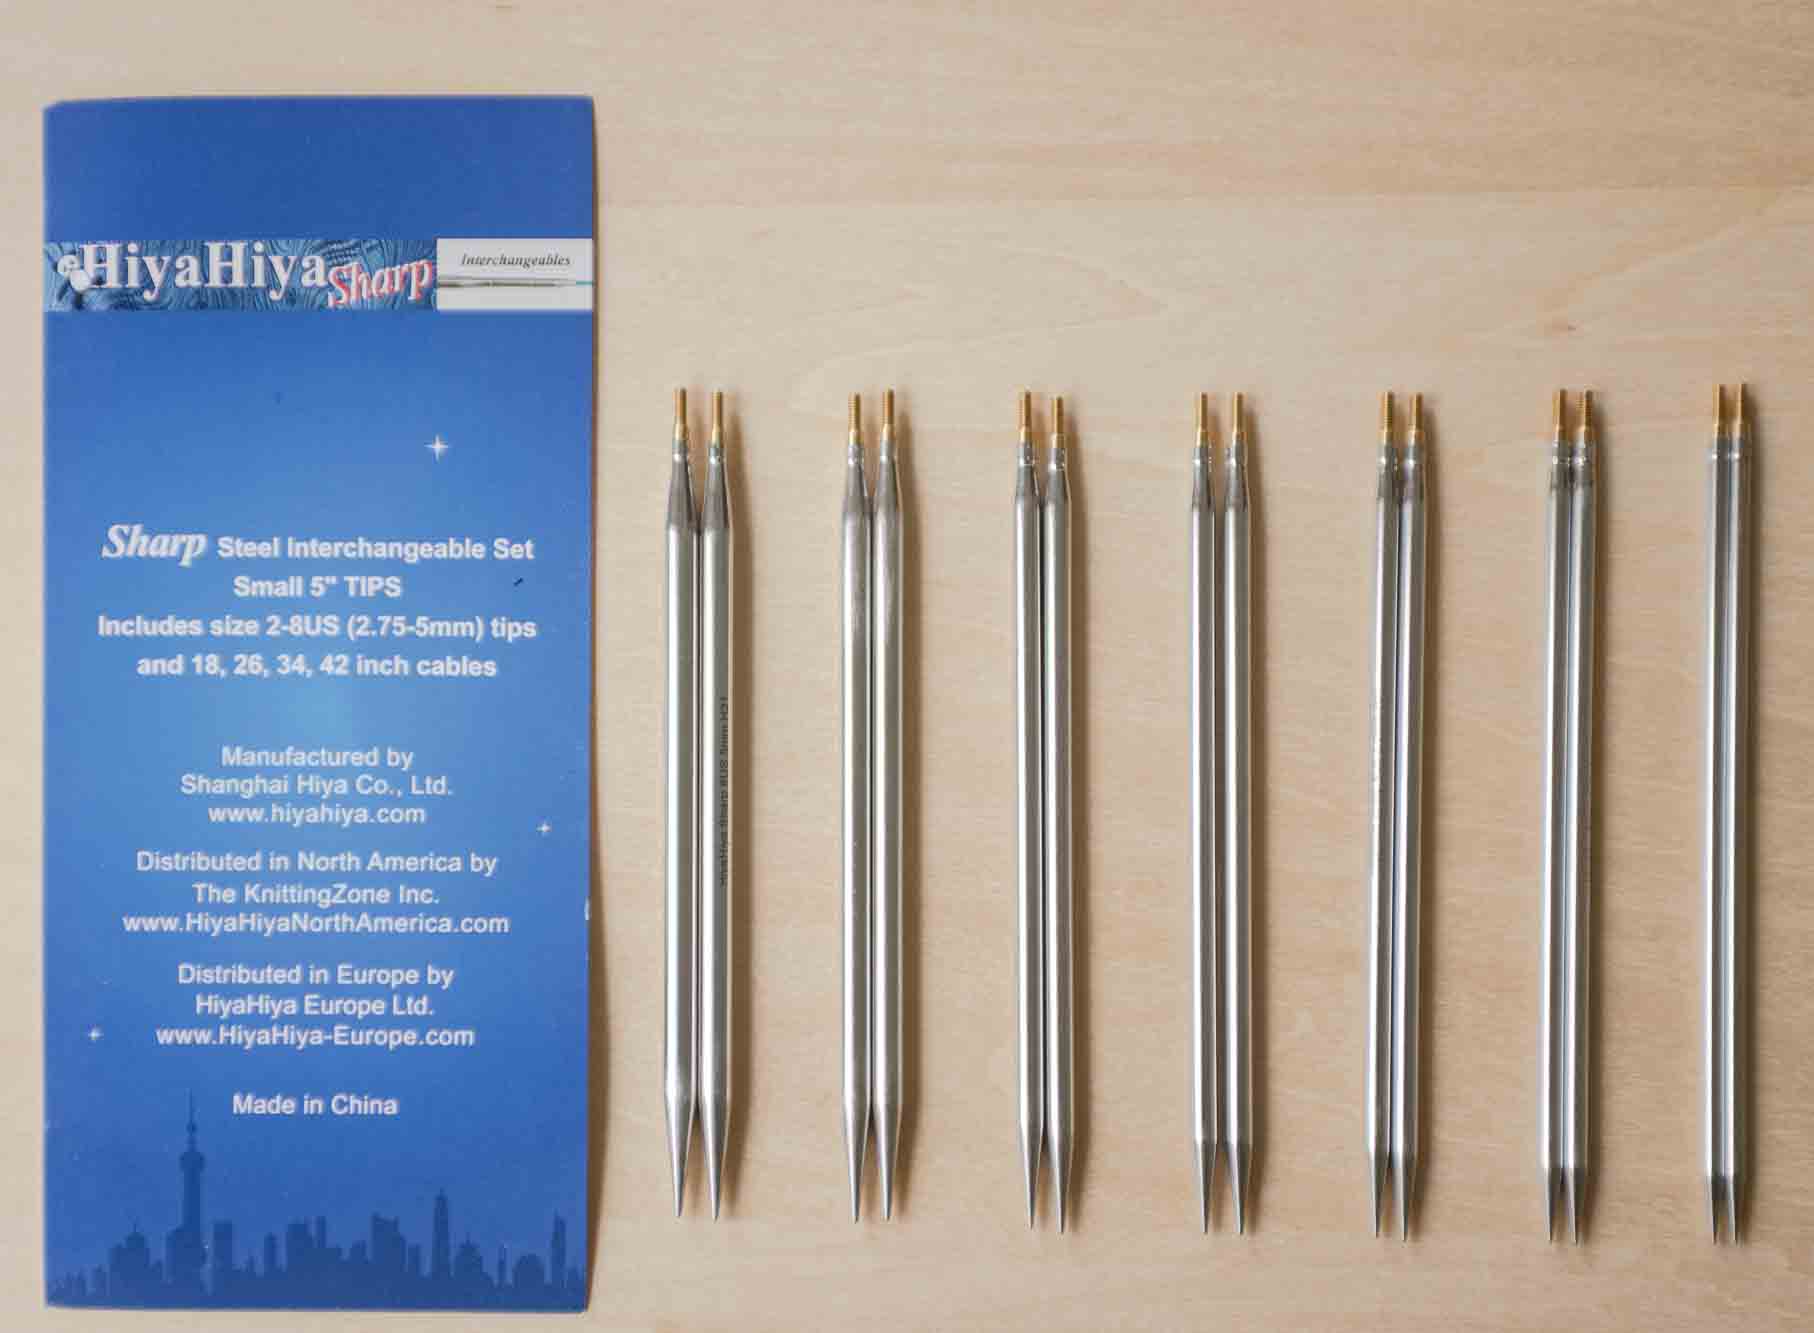 HiyaHiya Stainless Steel Interchangeable Needle Set